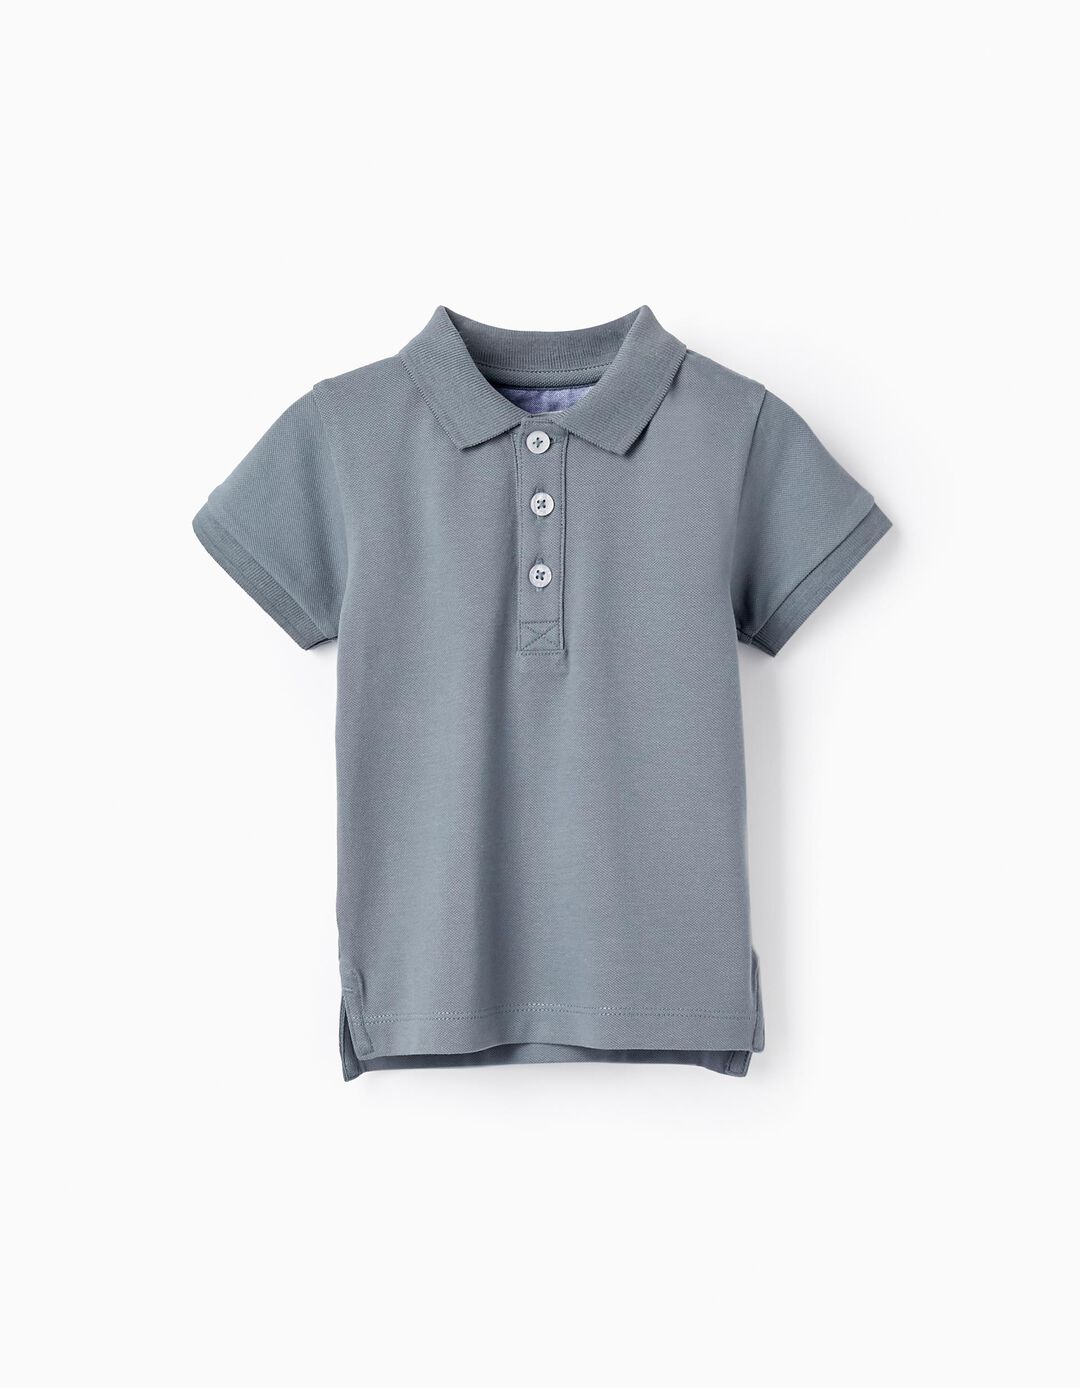 Short Sleeve Cotton Piqué Polo for Baby Boys 'B&S', Blue